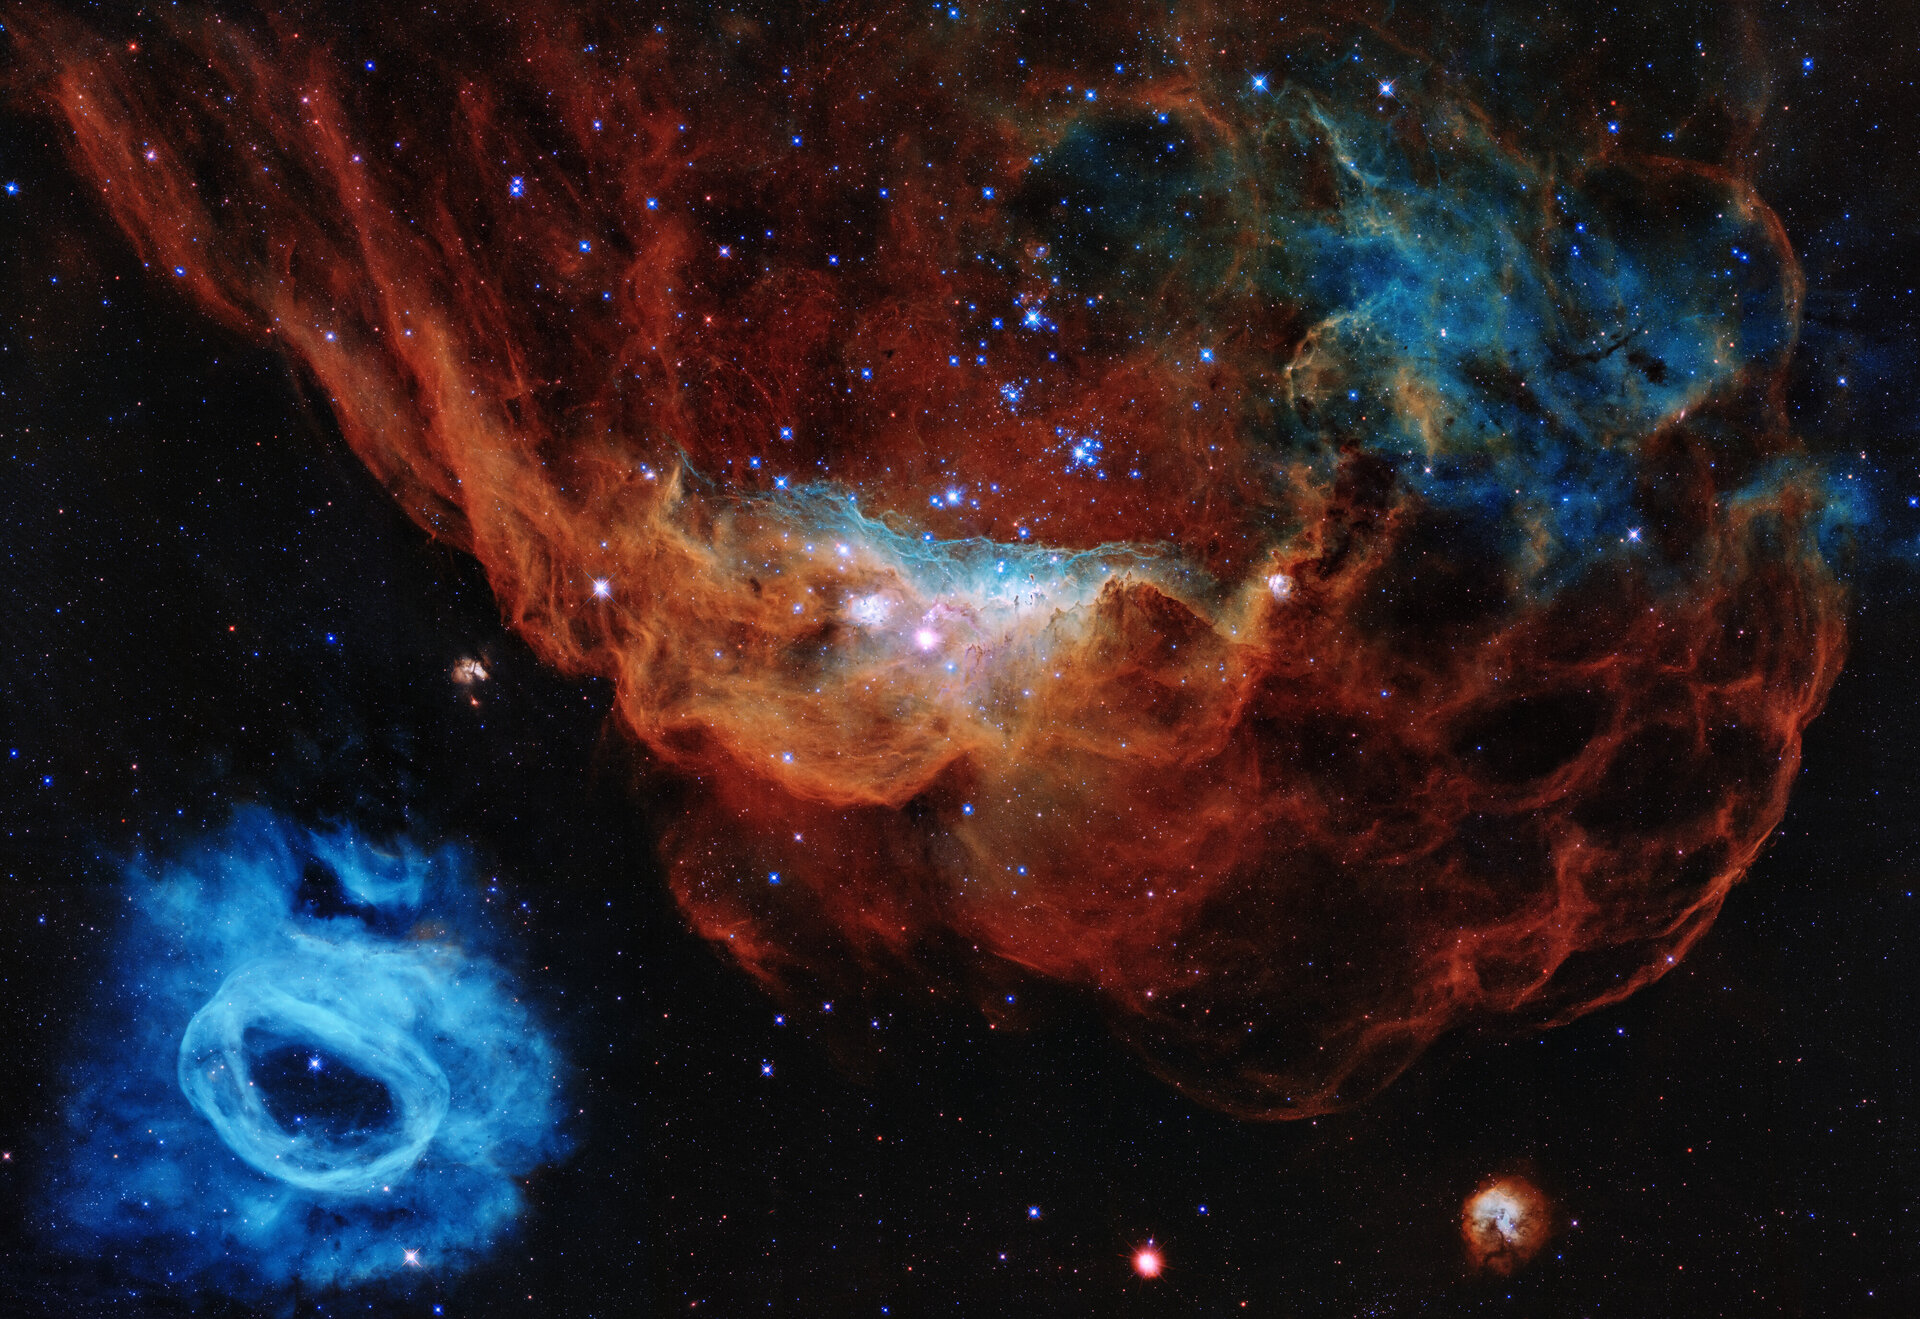 “Κοσμικός ύφαλος”: Το Hubble γιορτάζει 30 χρόνια λειτουργίας με μια εντυπωσιακή φωτογραφία